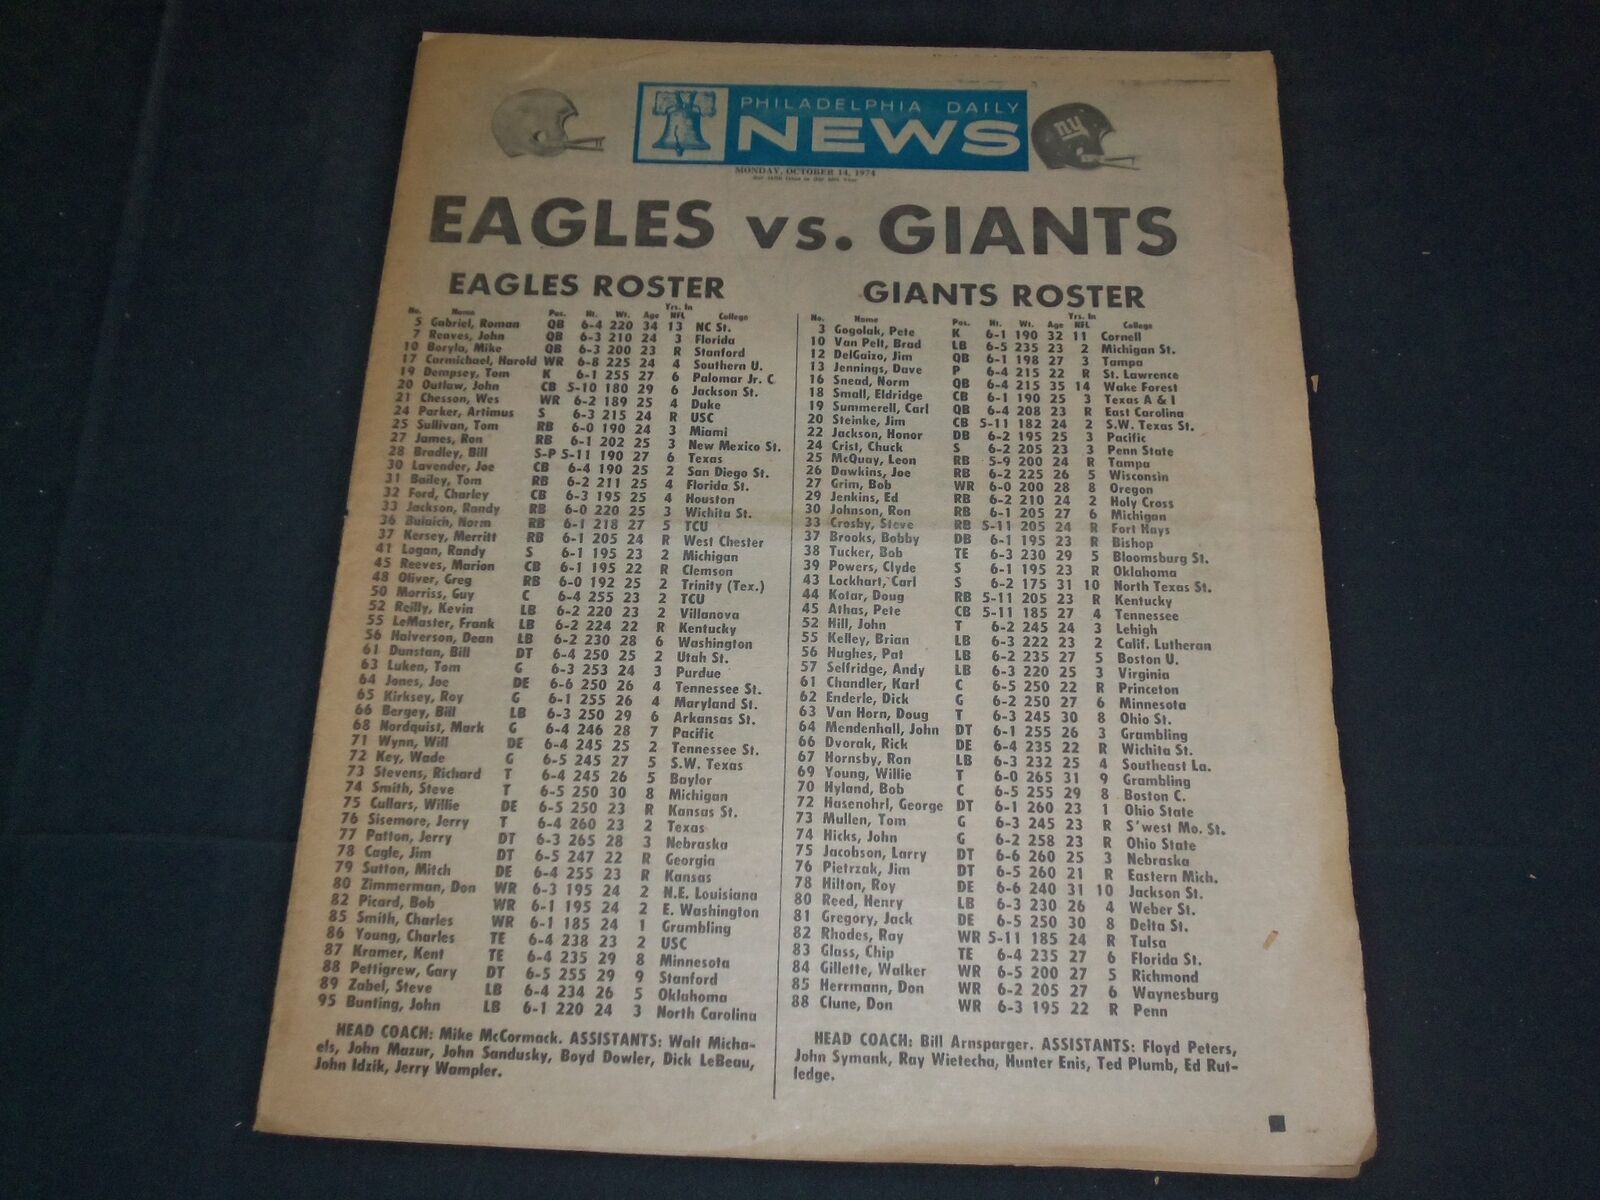 1974 OCTOBER 14 PHILADELPHIA DAILY NEWS NEWSPAPER - EAGLES VS. GIANTS - NP 3512